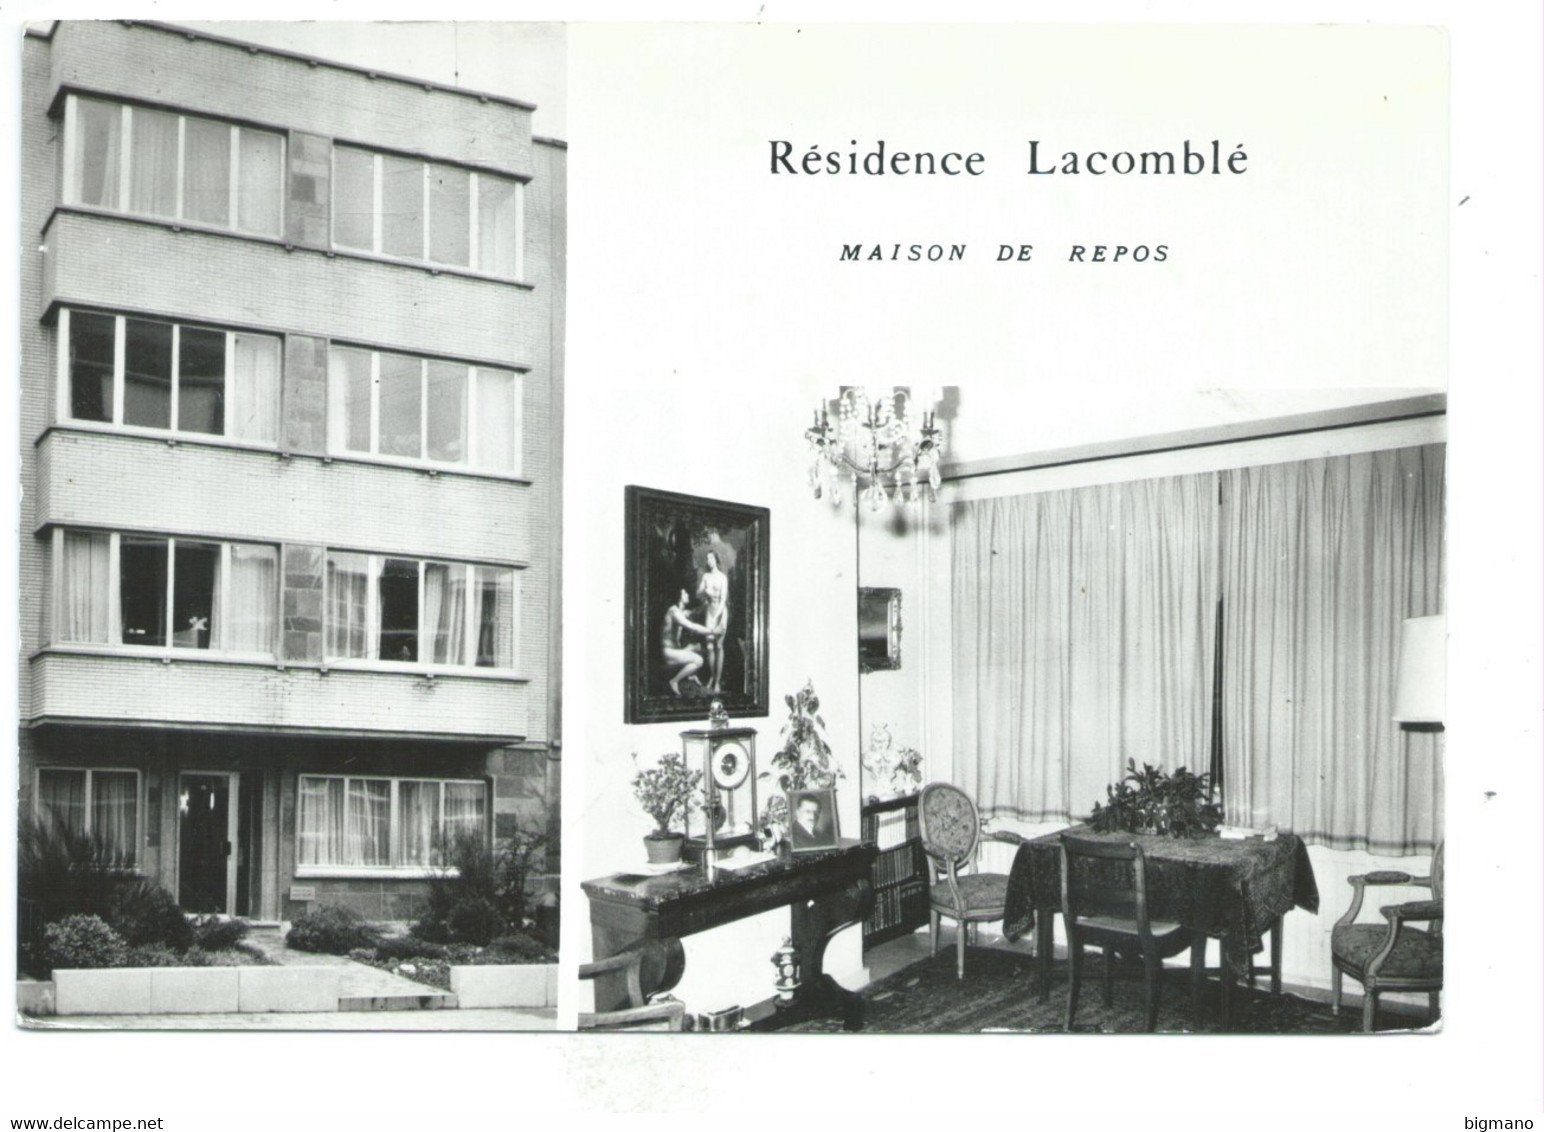 Bruxelles 1040 Etterbeek Résidence Lacomblé Maison De Repos - Etterbeek